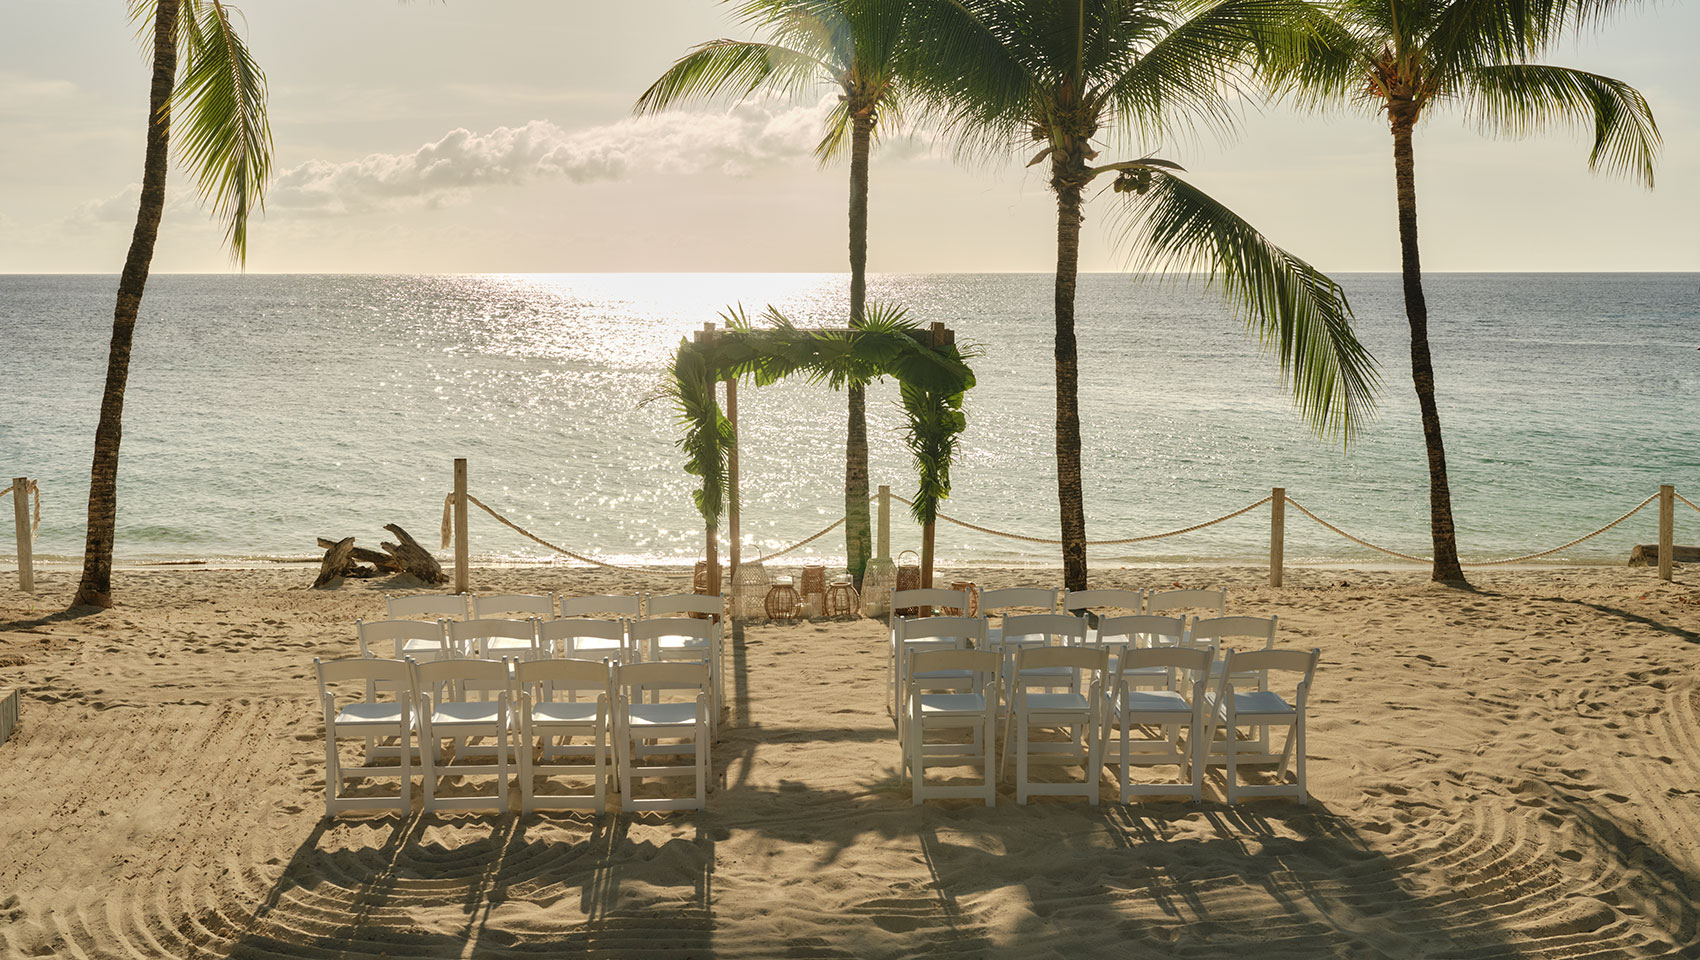 Roatan beach wedding with tropical arbor overlooking ocean